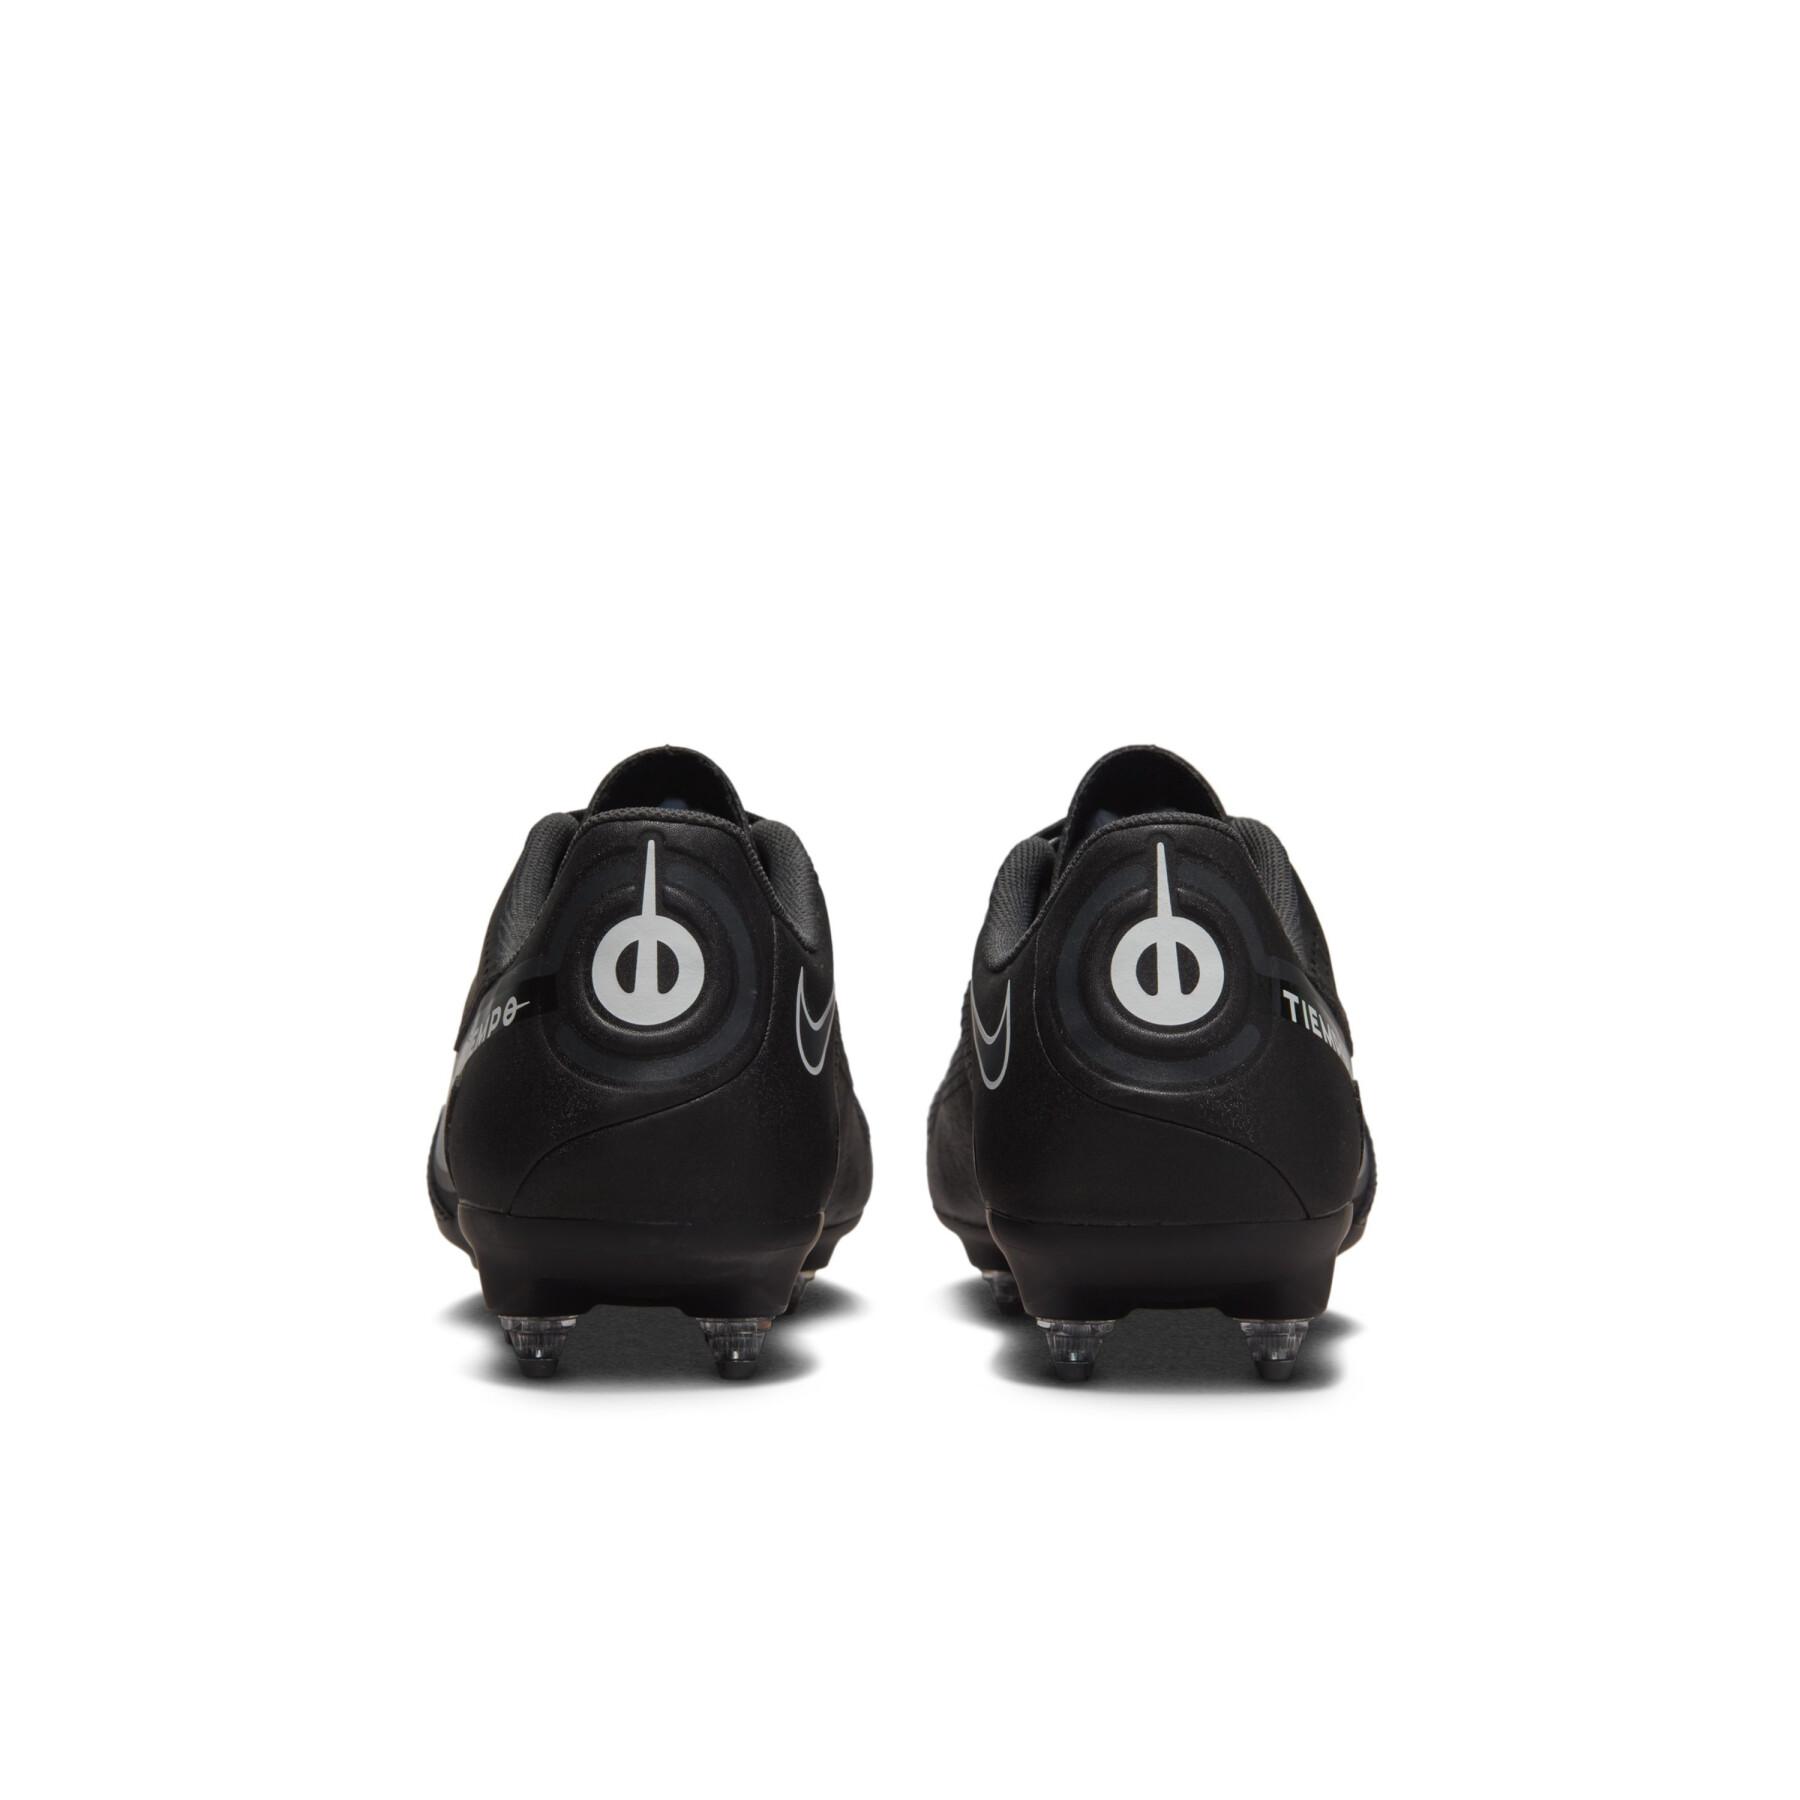 Sapatos de futebol Nike Tiempo Legend 9 Academy SG-Pro AC - Shadow Black Pack